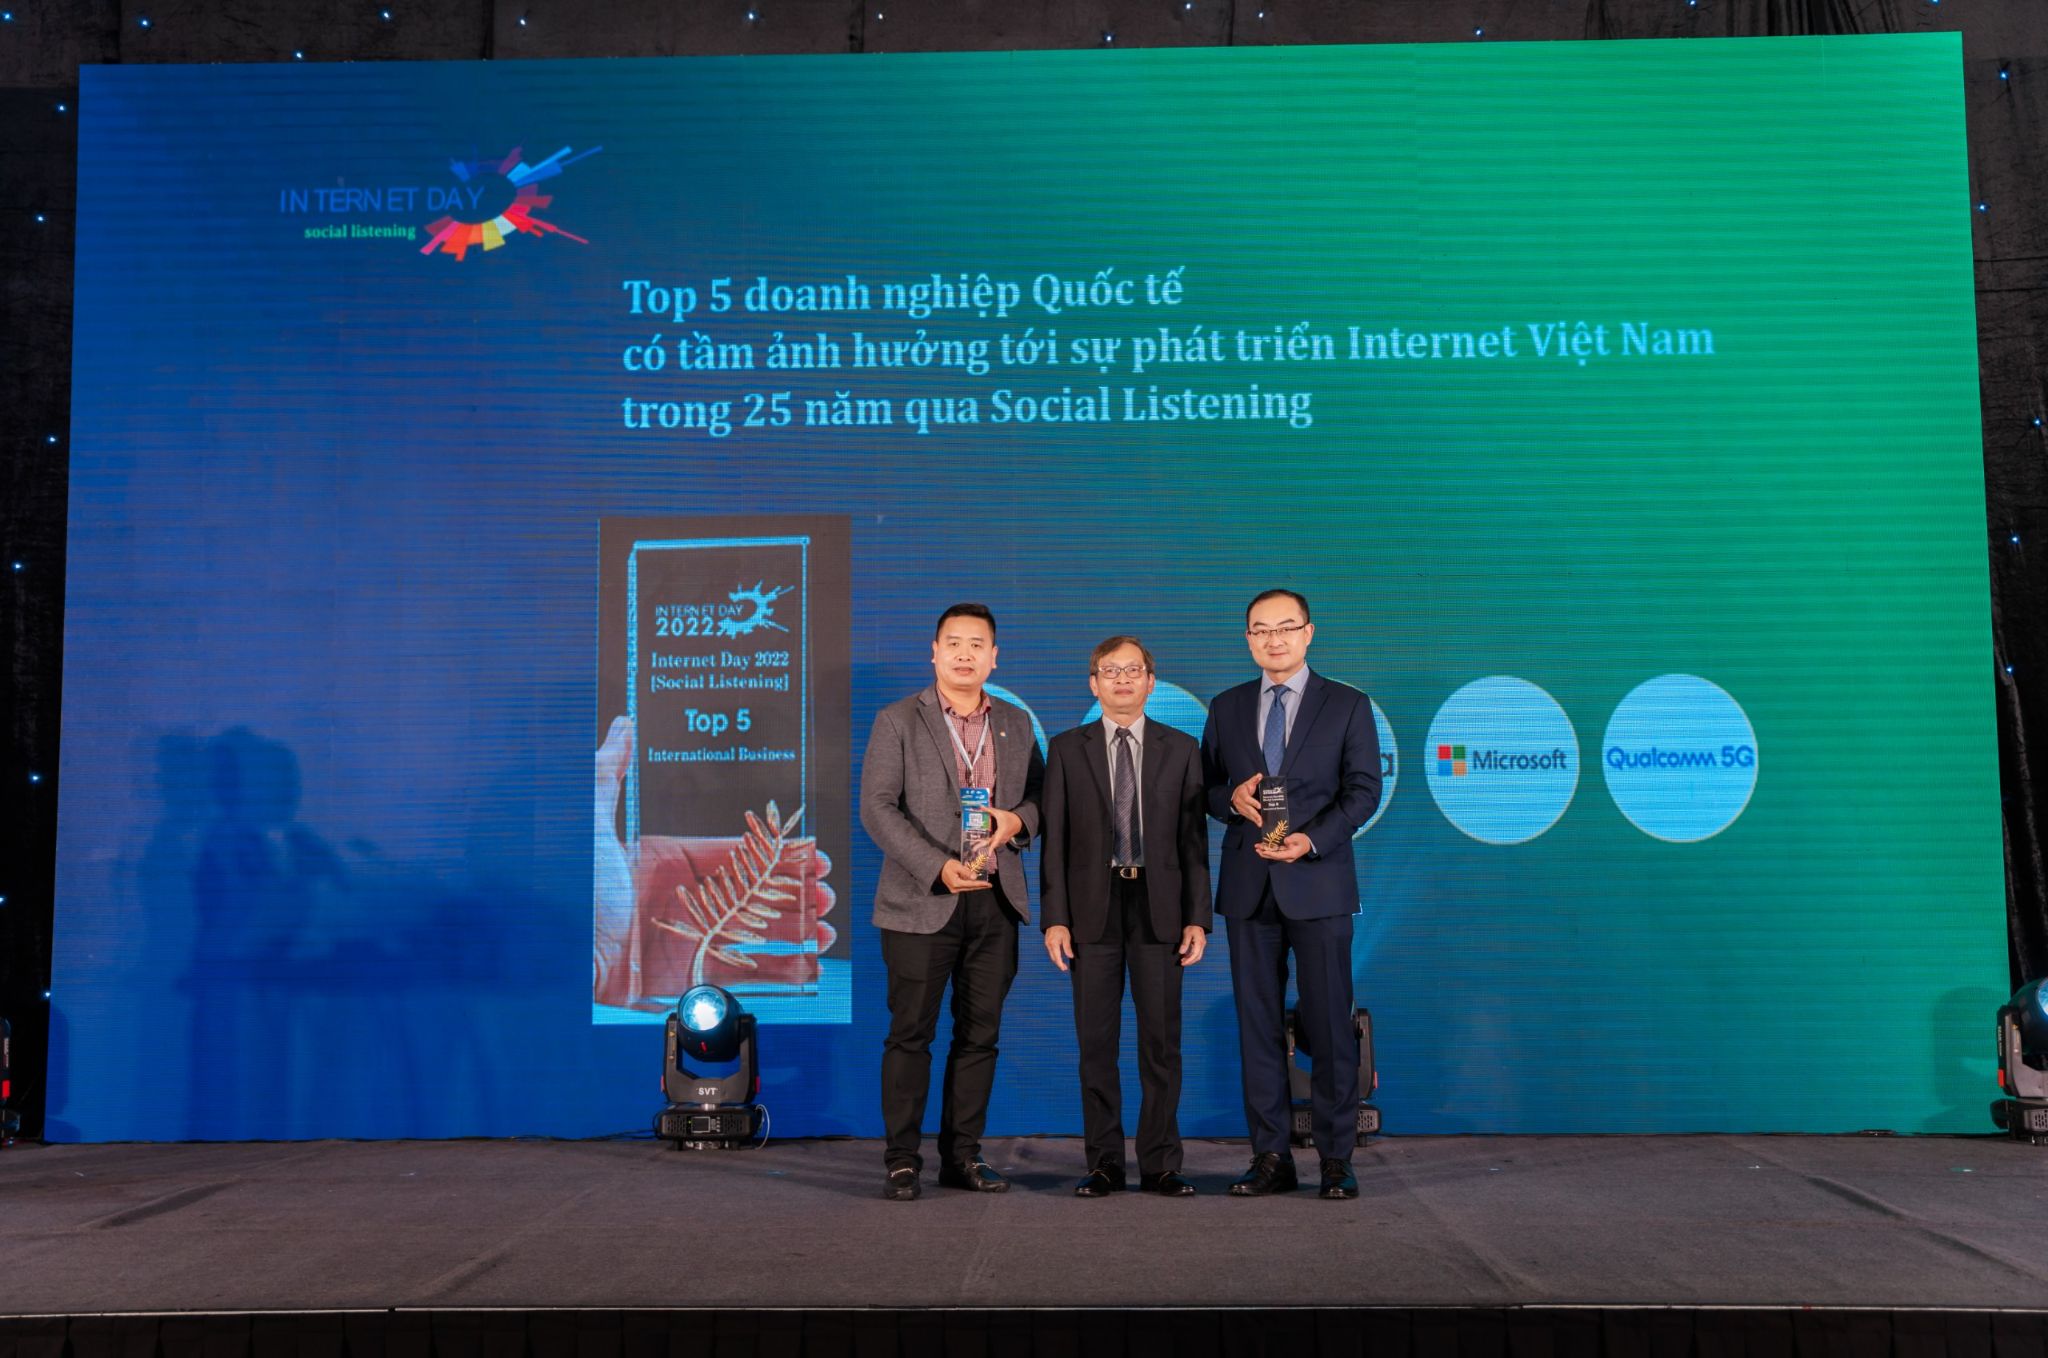 Ông David Wei Tổng Giám đốc Huawei Việt Nam nhận giải thưởng Top 5 Doanh nghiệp Quốc tế có tầm ảnh hưởng tới sự phát triển Internet Việt Nam Huawei nhận giải thưởng Top 5 Doanh nghiệp Quốc tế có tầm ảnh hưởng tới sự phát triển Internet Việt Nam